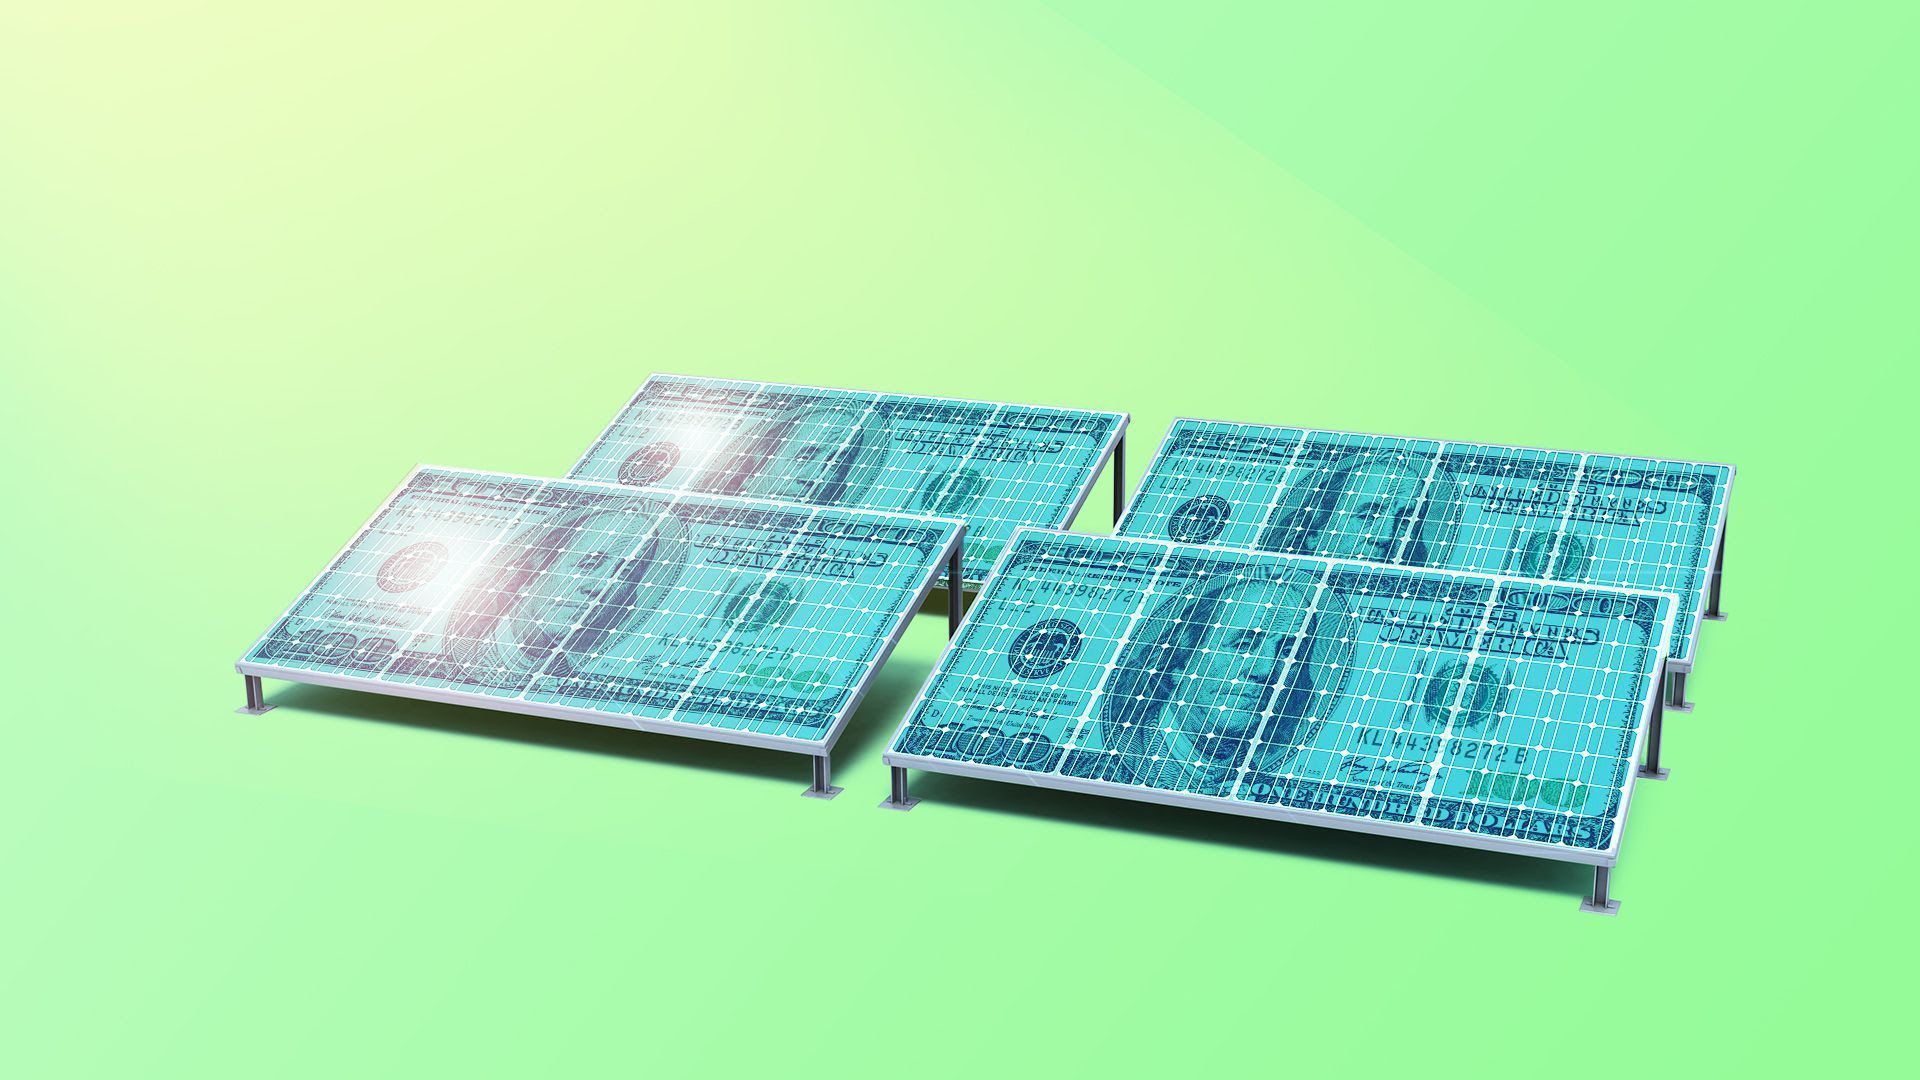 Illustration of hundred-dollar bills as solar panels.